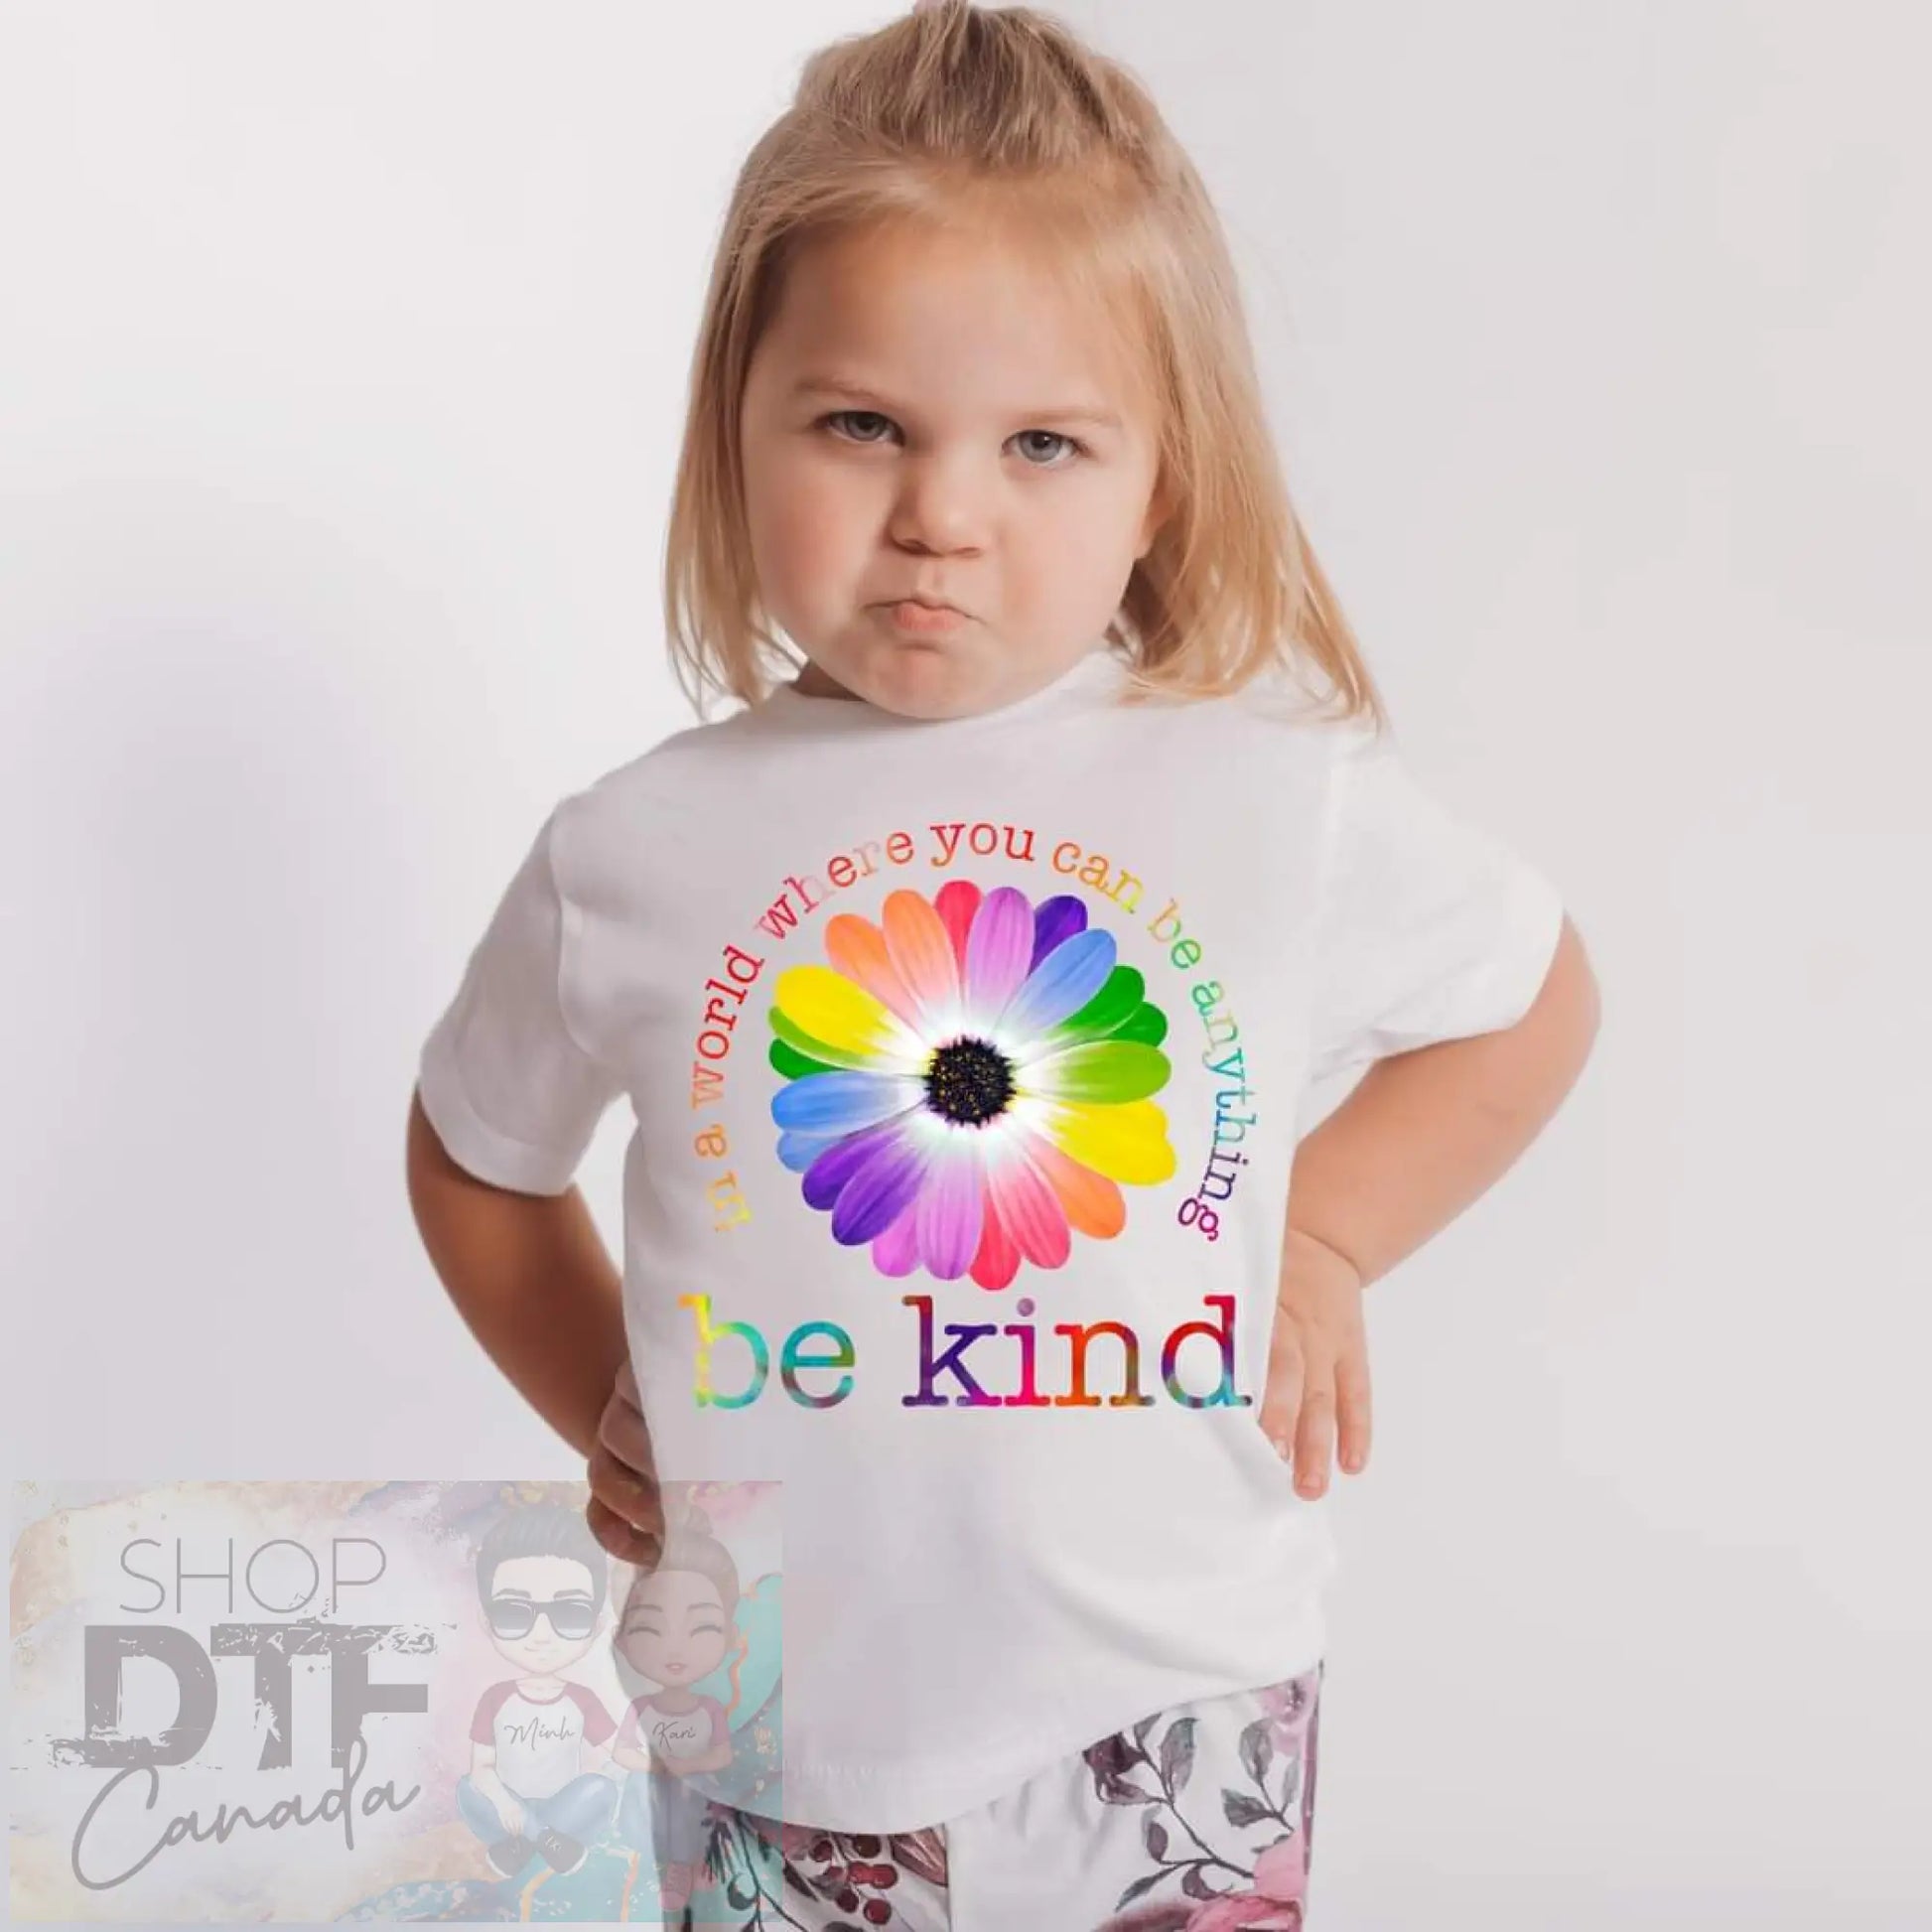 Kids - be kind - Shirts & Tops